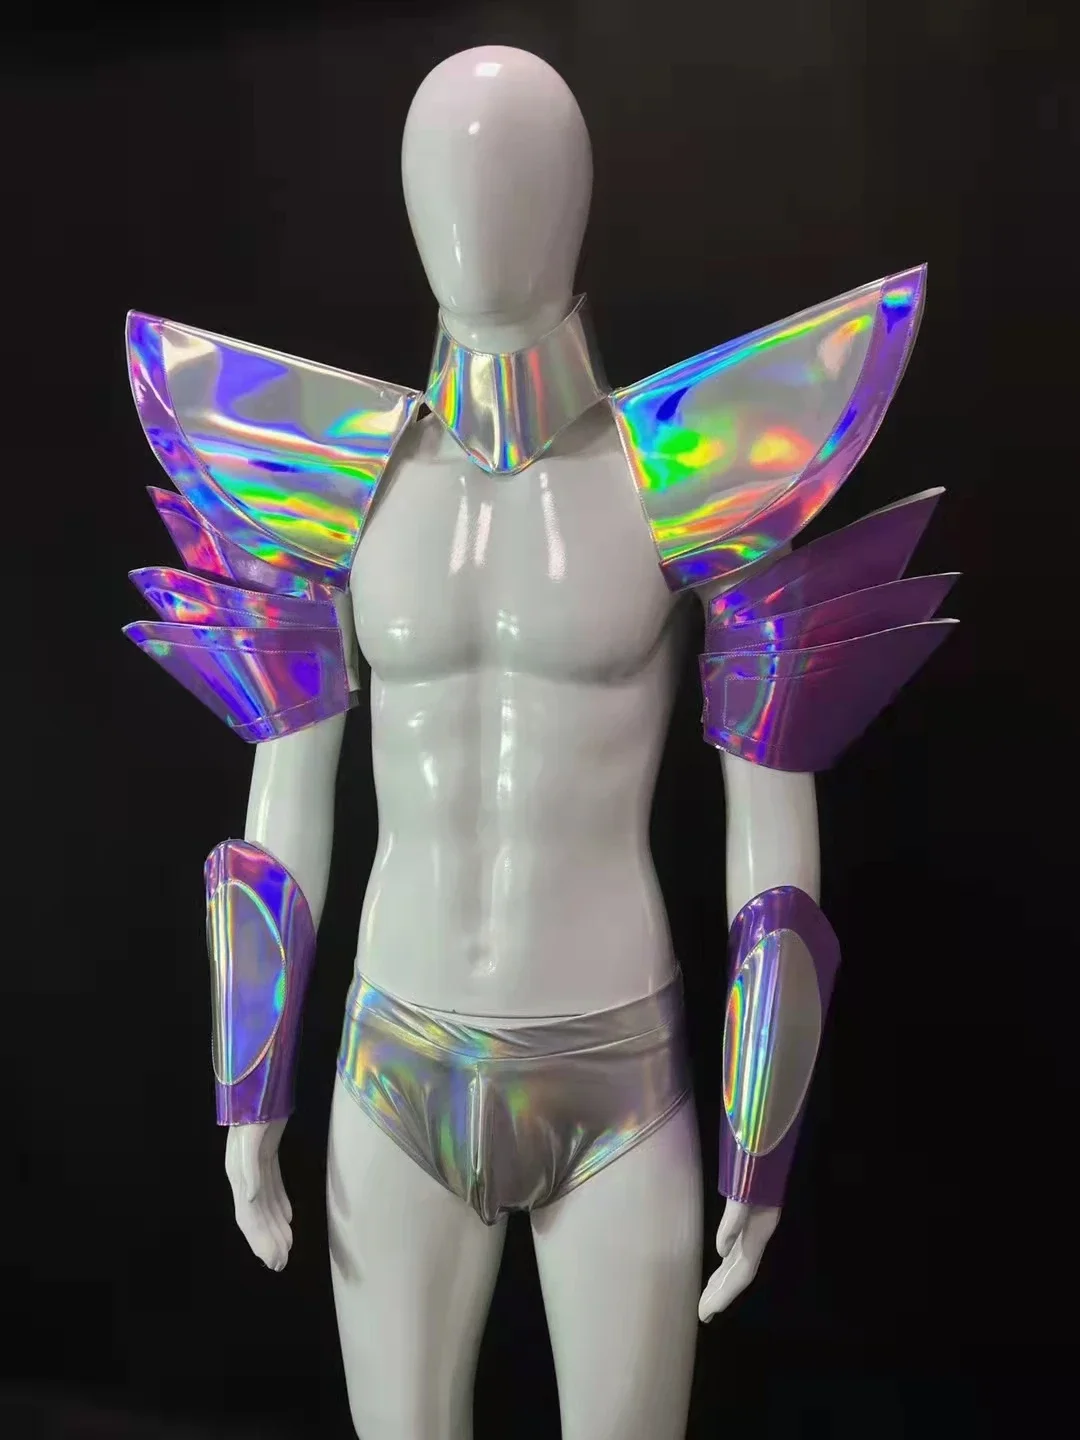 

Мужской космический зеркальный армированный кожаный клубный брикет для ночного клуба DJ Gogo сексуальный серебряный костюм Одежда для сценического шоу манжета наряд